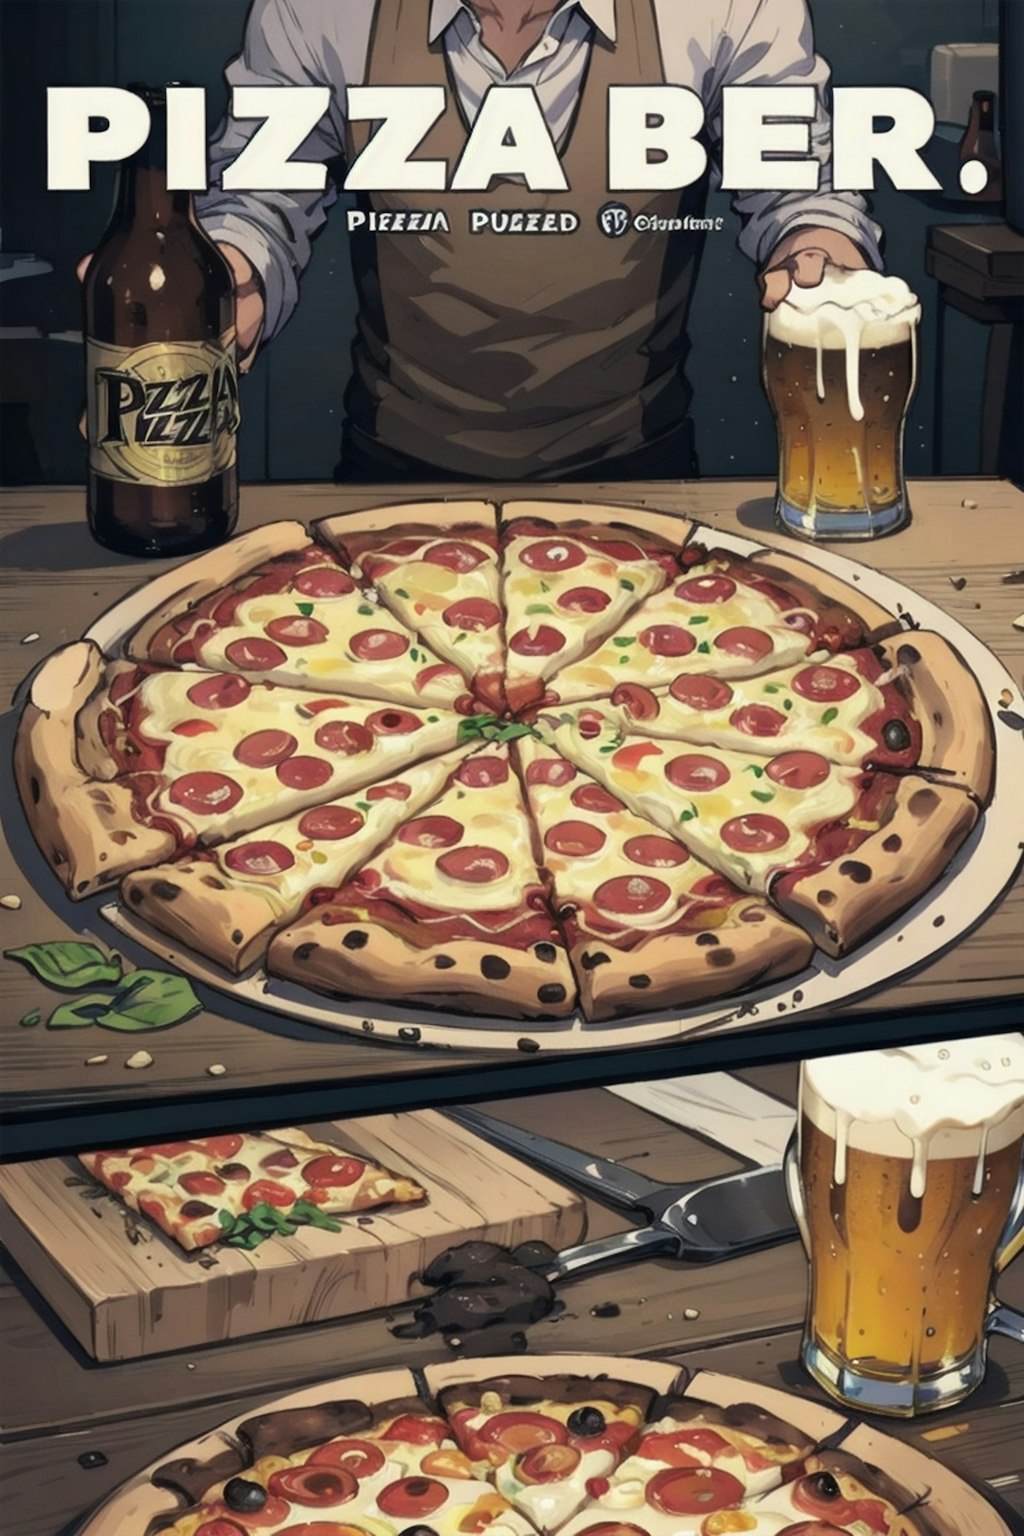 pizza &beer